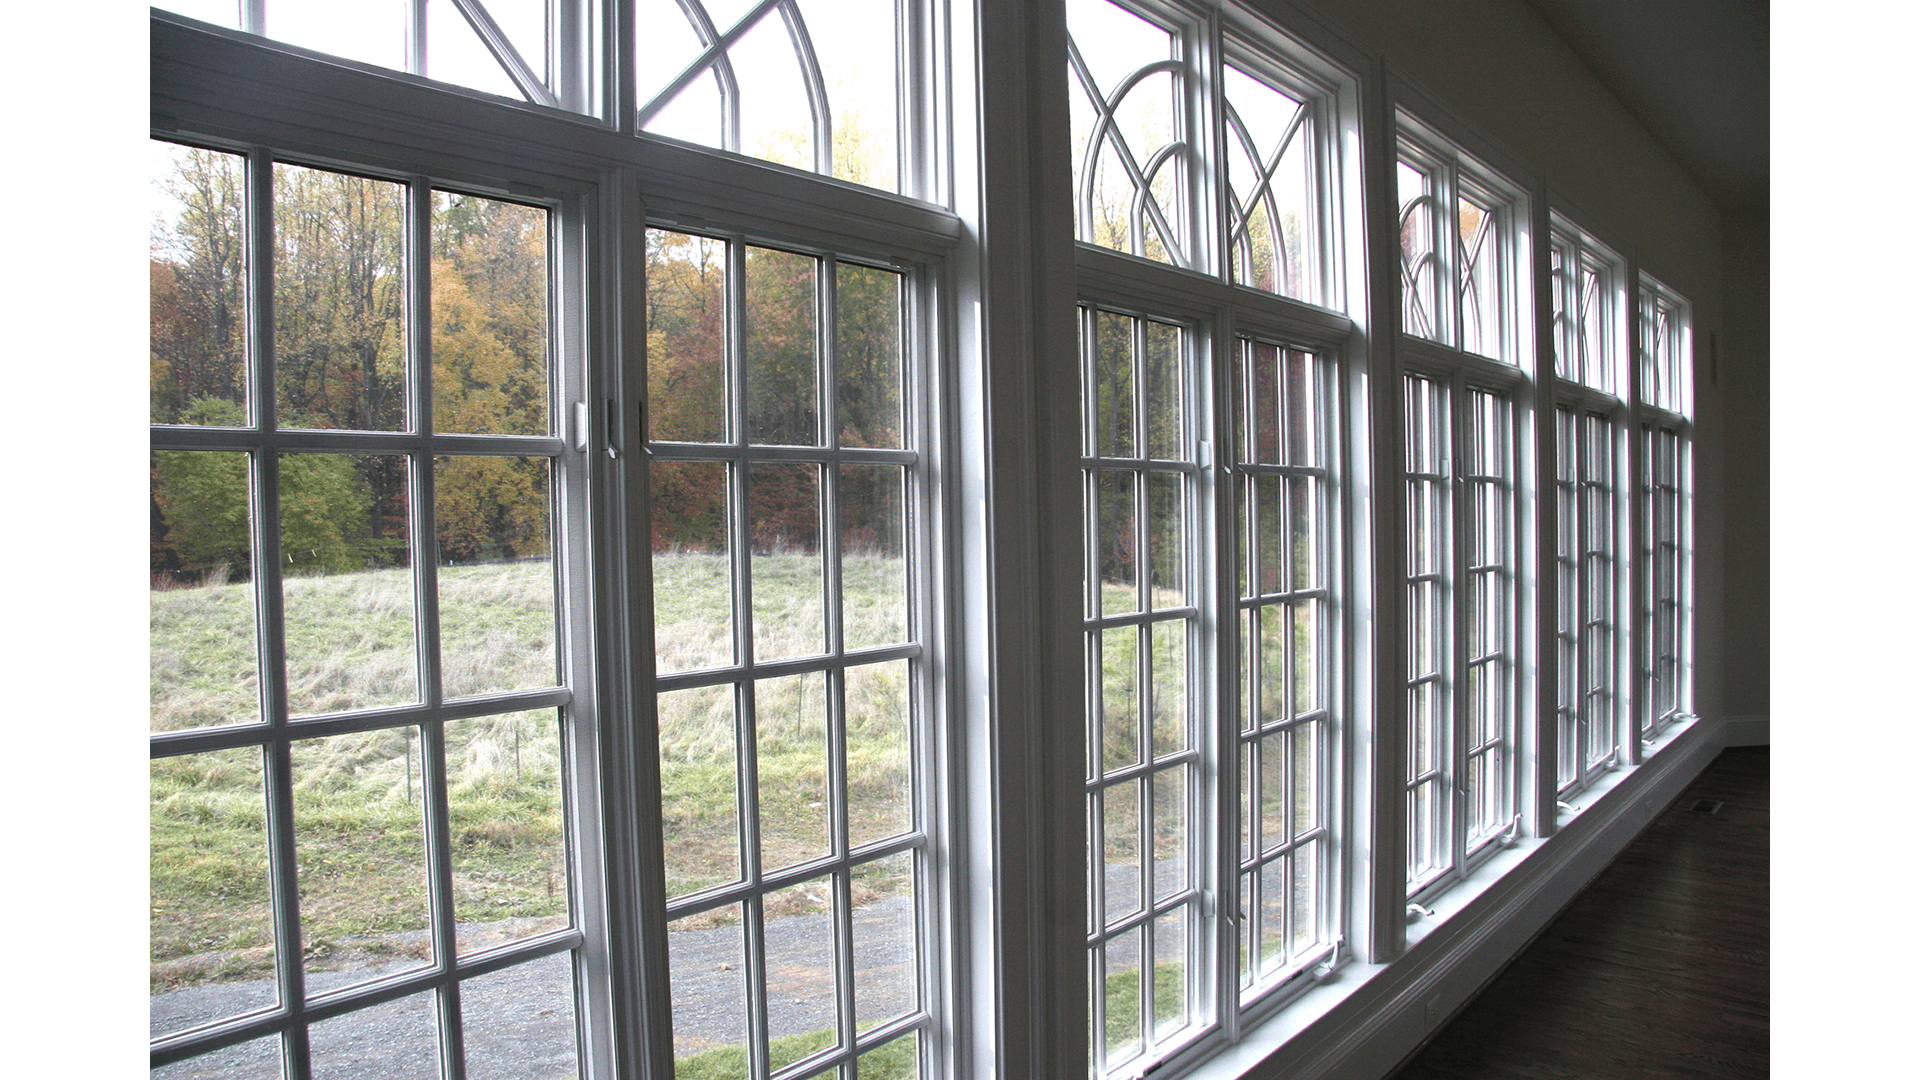 Grovemont Wentworth - Window Detail